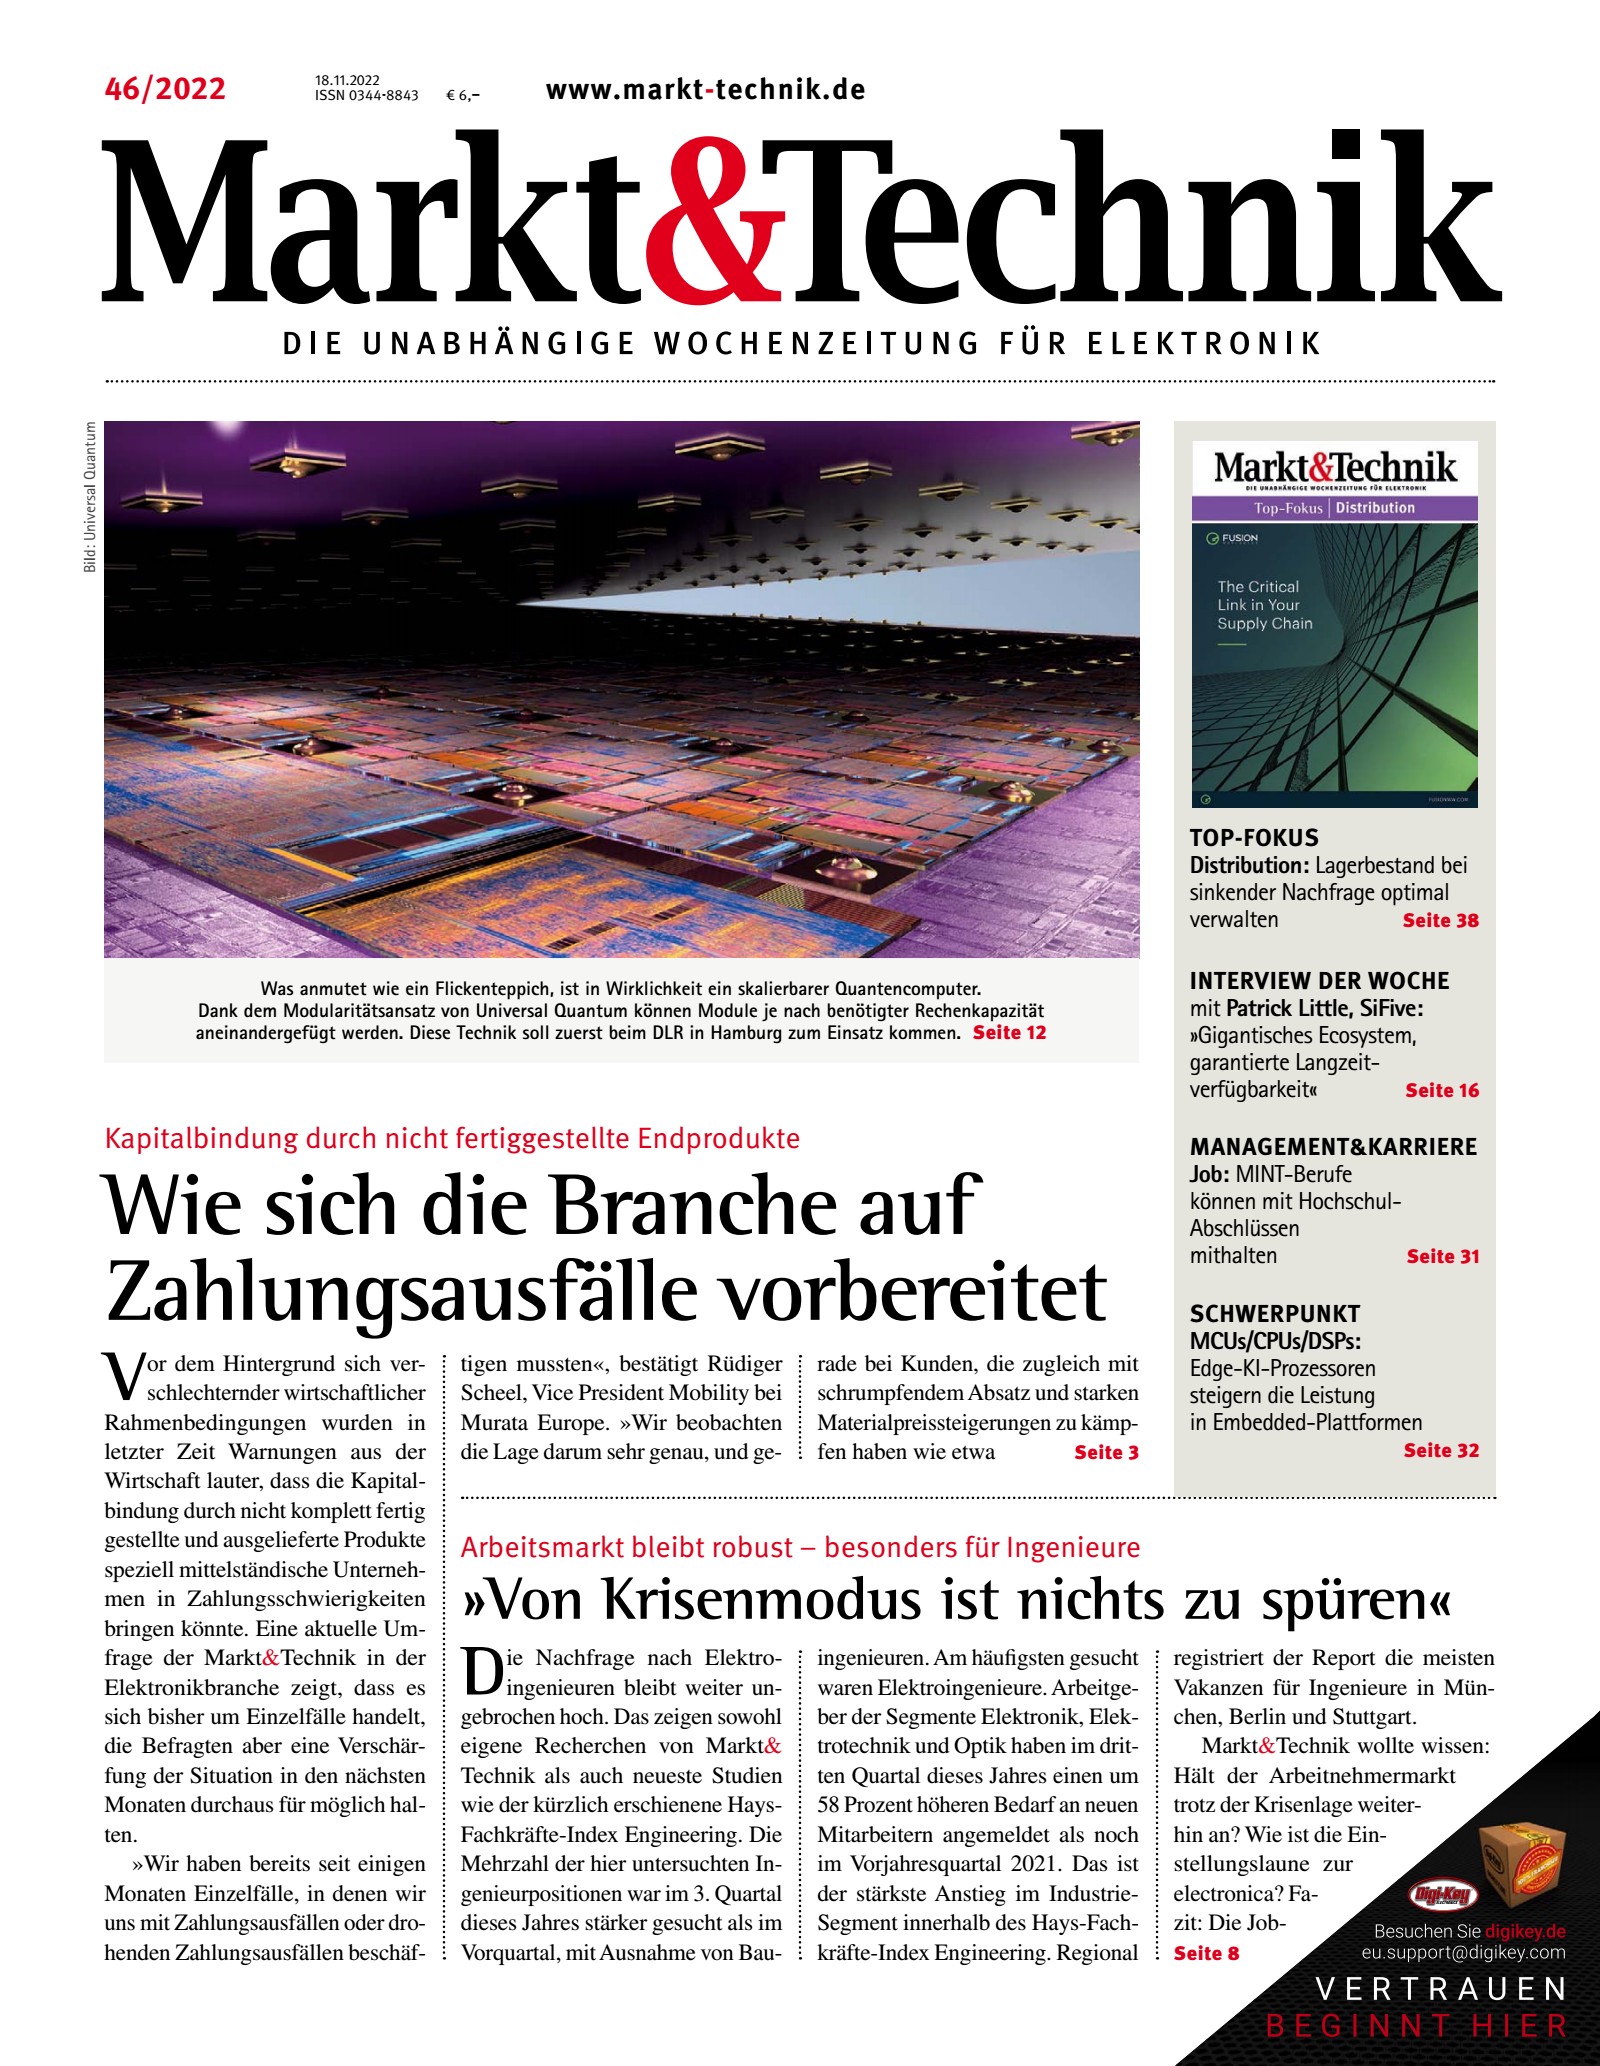 Markt&Technik 46/2022 Digital